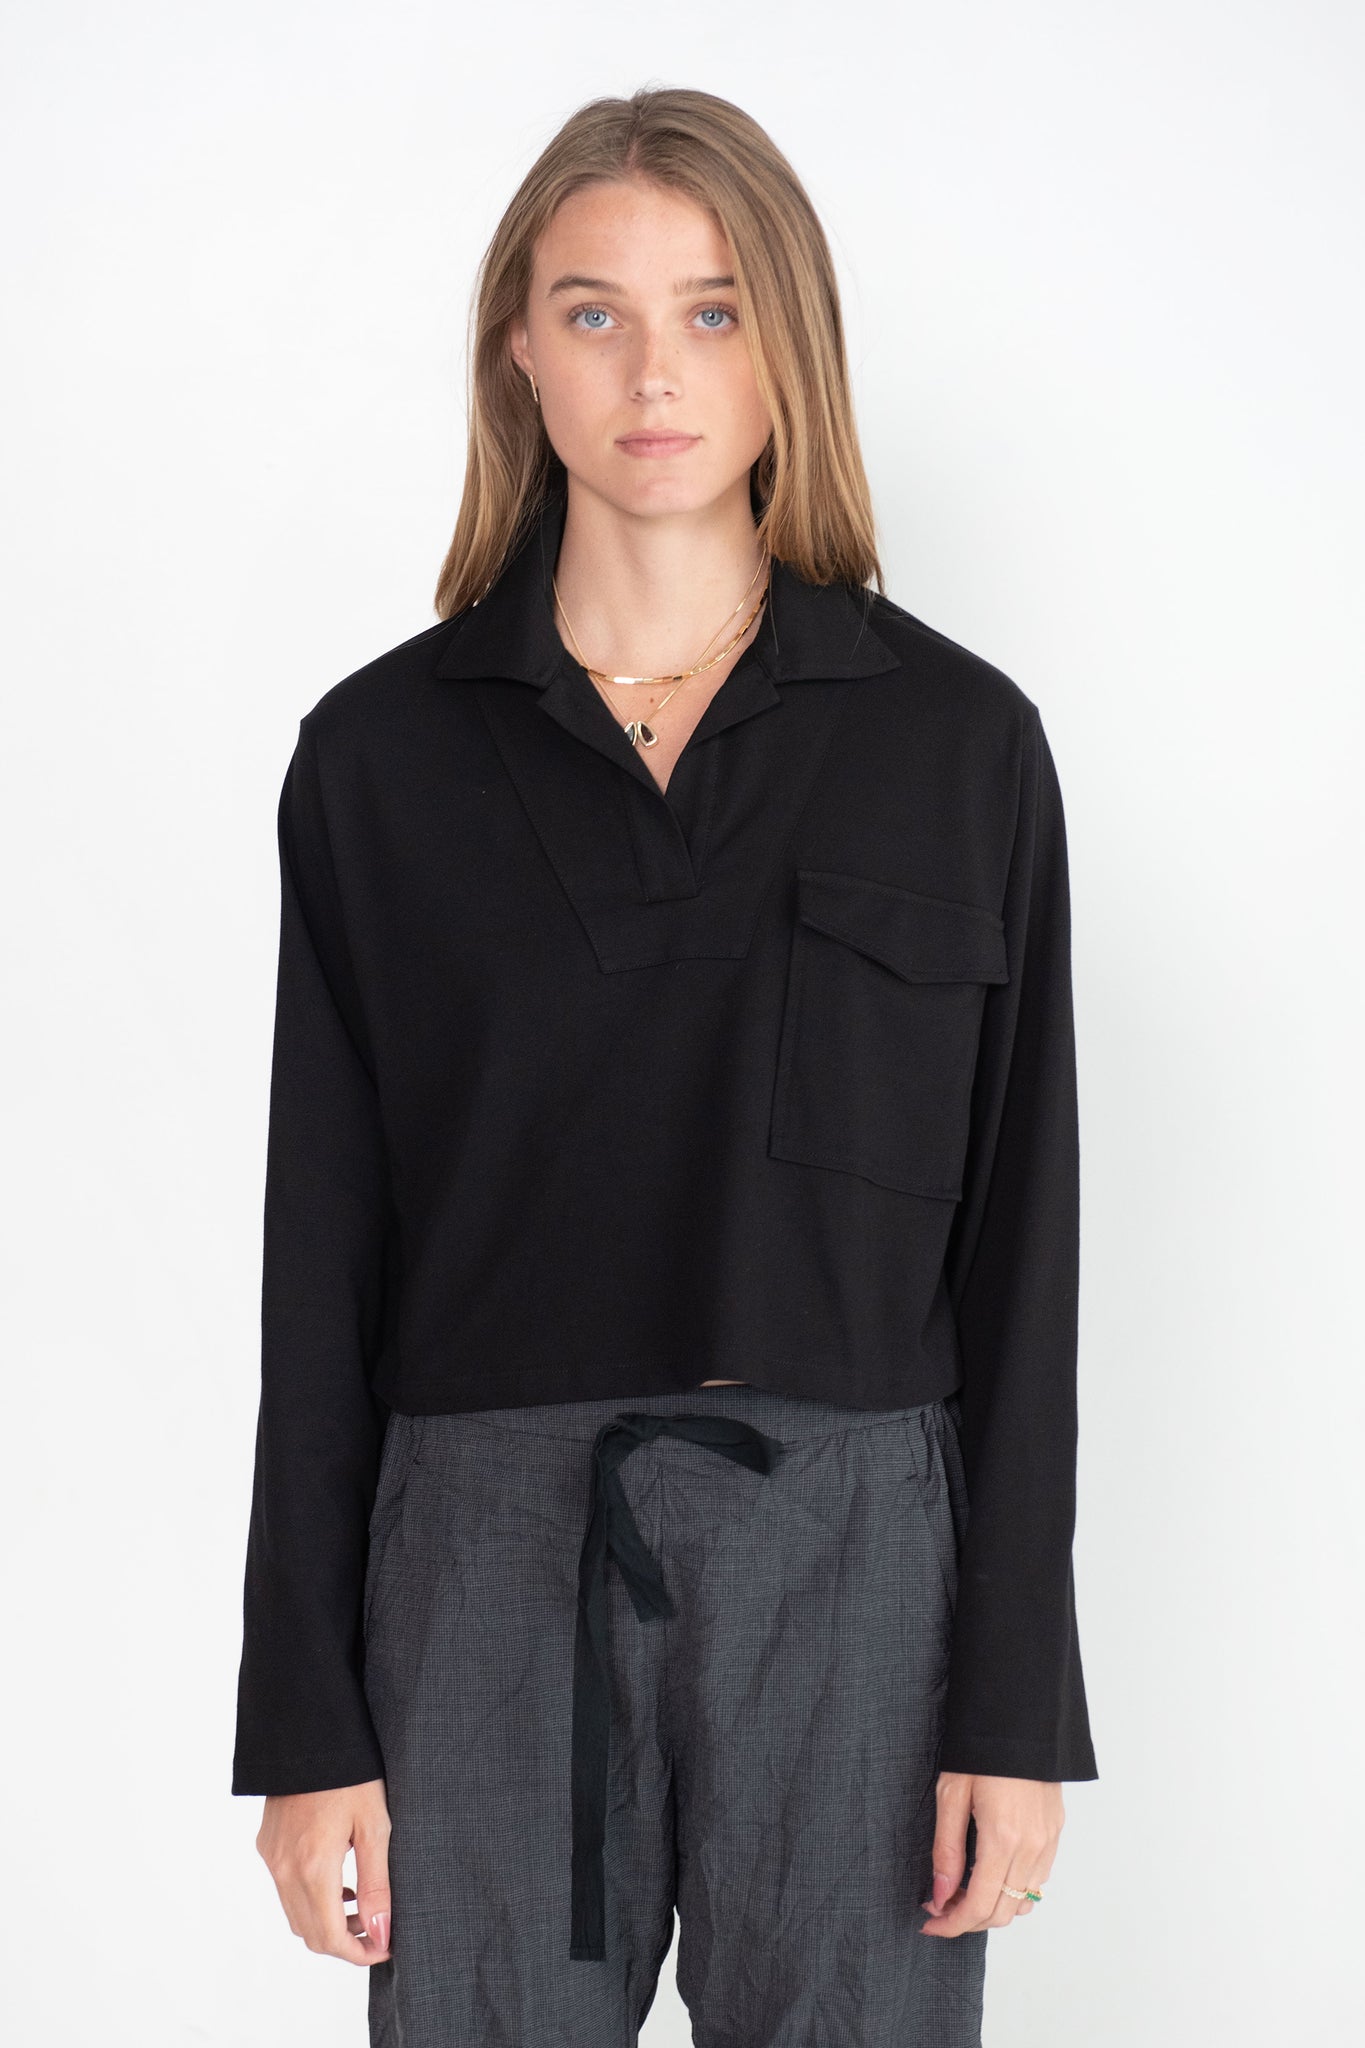 Dries Van Noten - Collared Jersey Pullover, Black